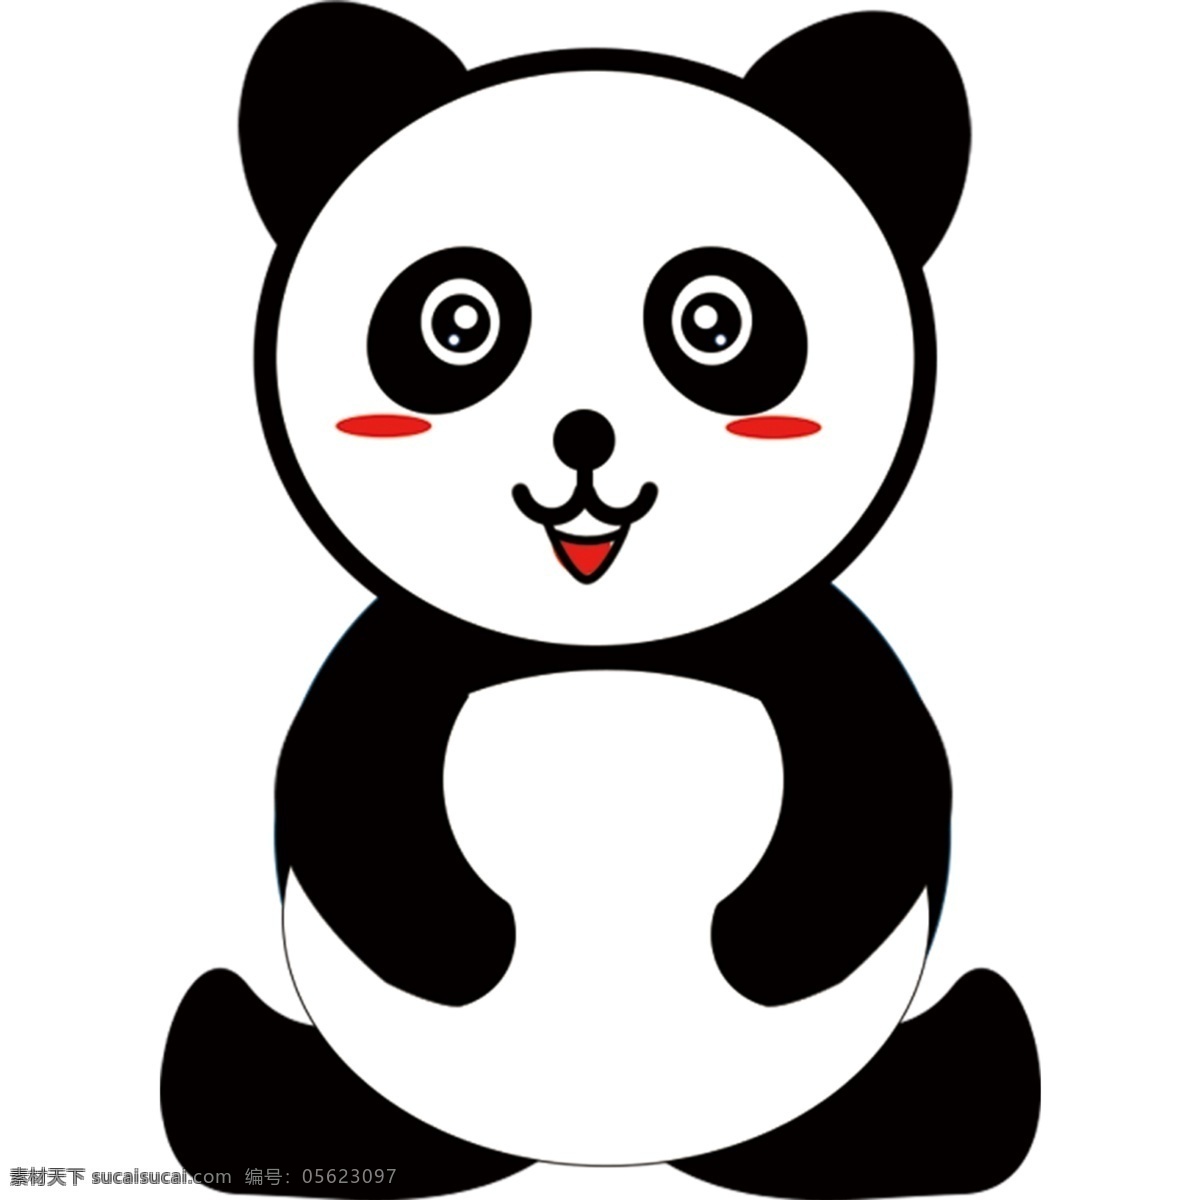 熊猫素材 熊猫 扁平 矢量 猫 熊 黑白猫 大熊猫 玩具熊猫 打招呼 手绘 动漫动画